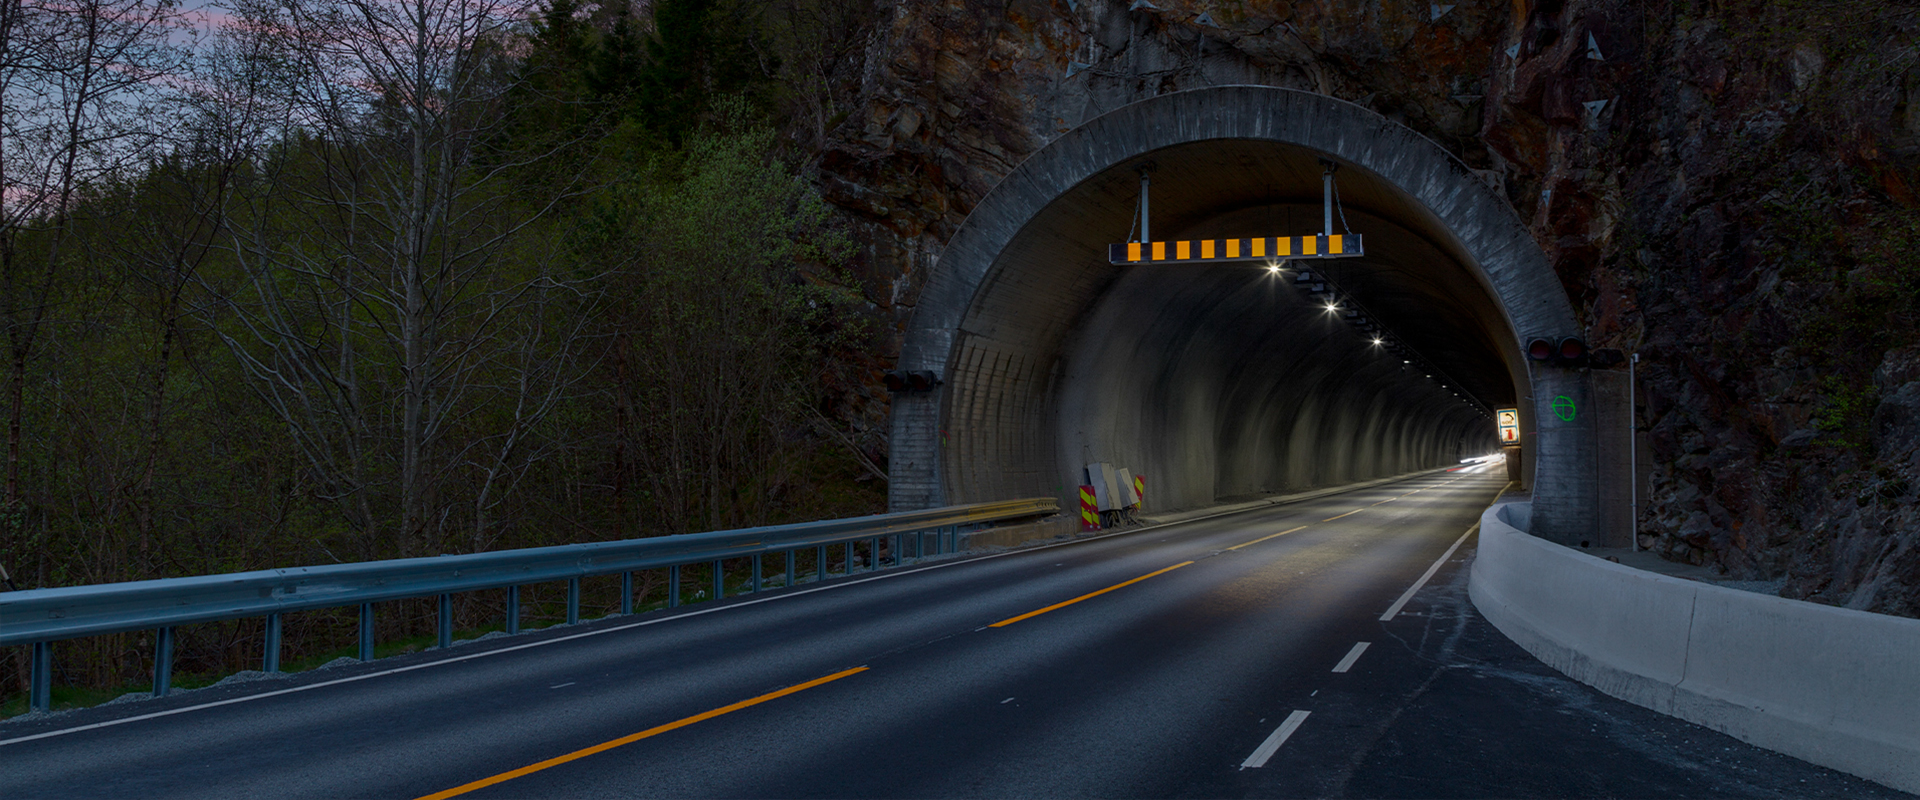 LED tunnel lighting of the Bjørsvik Tunnel